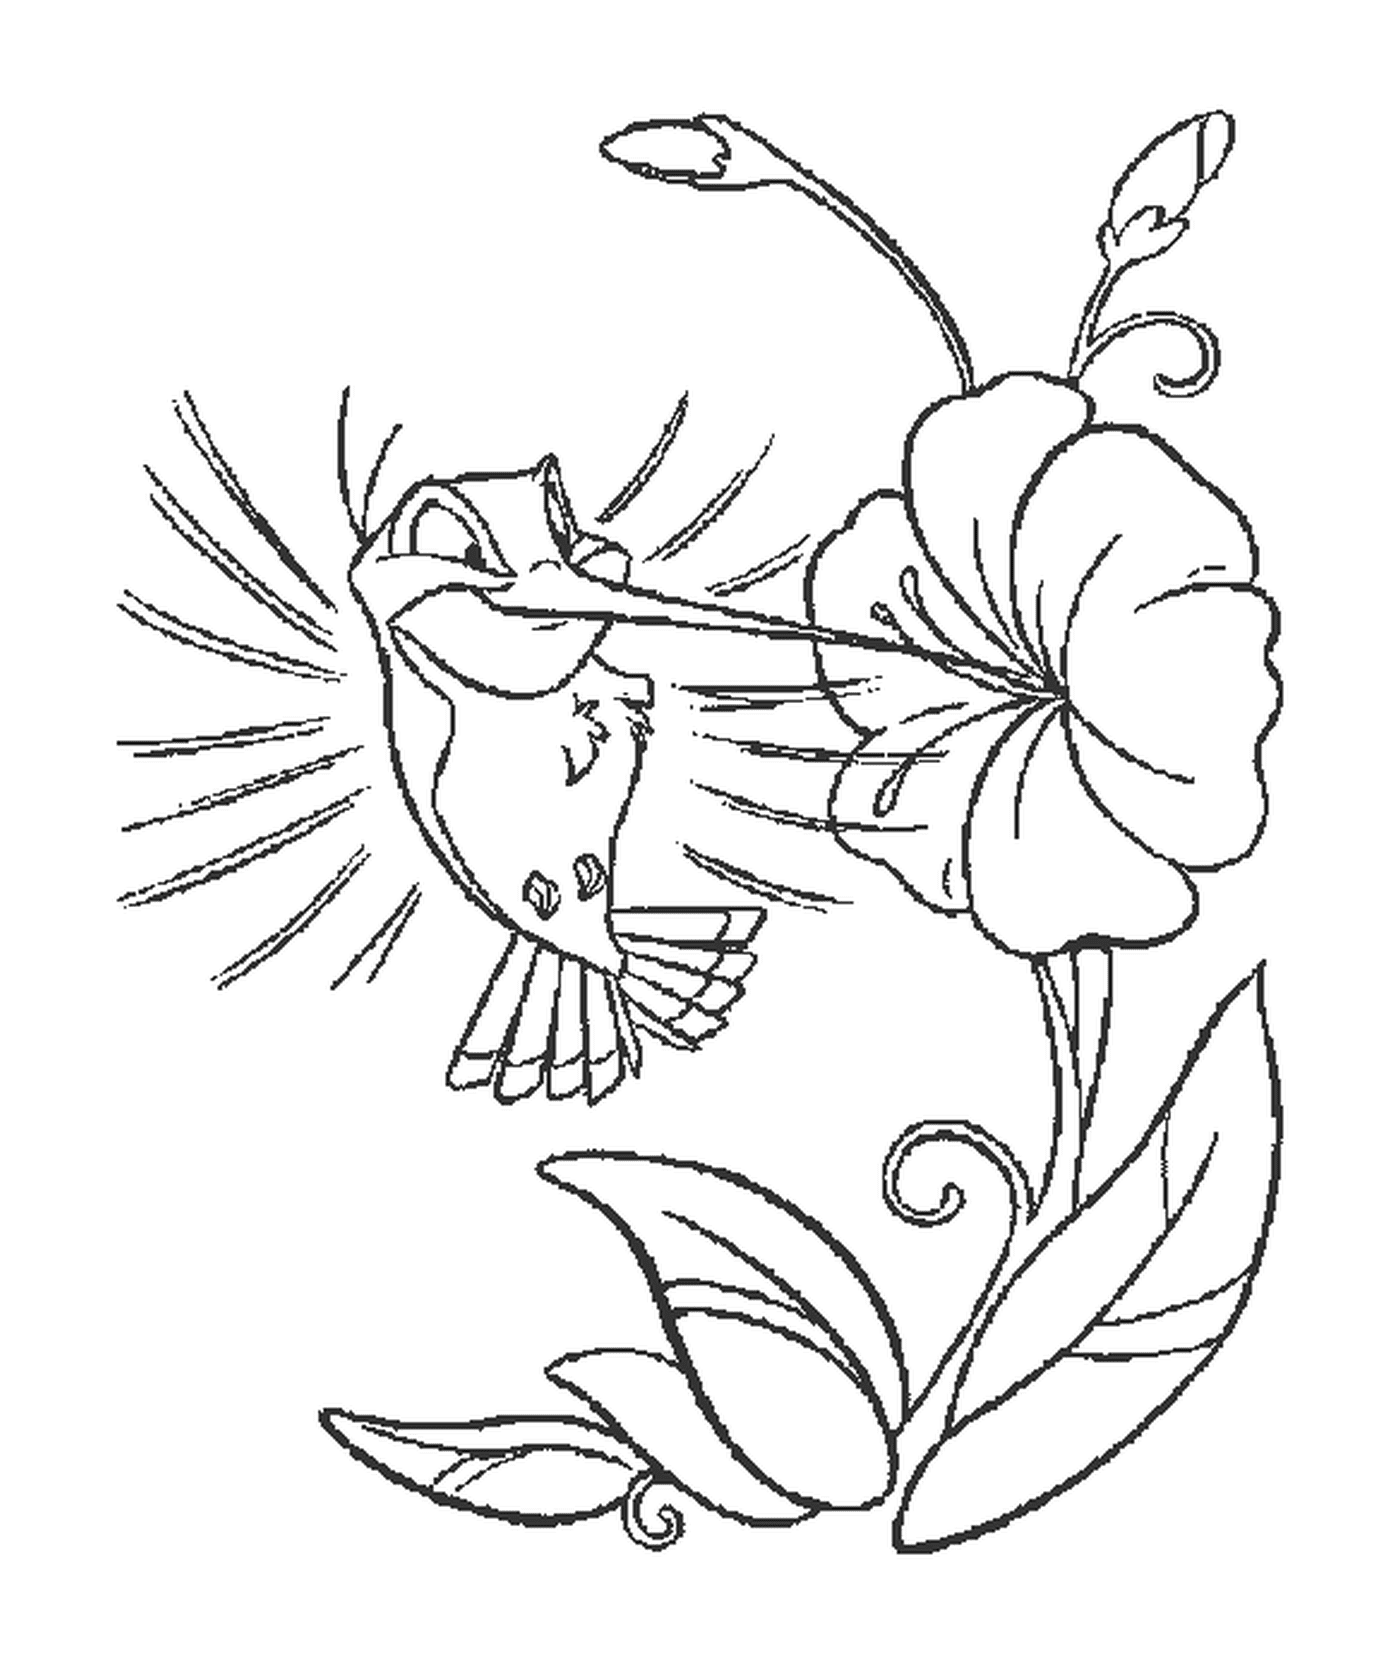  Un colibrì vicino a un fiore 